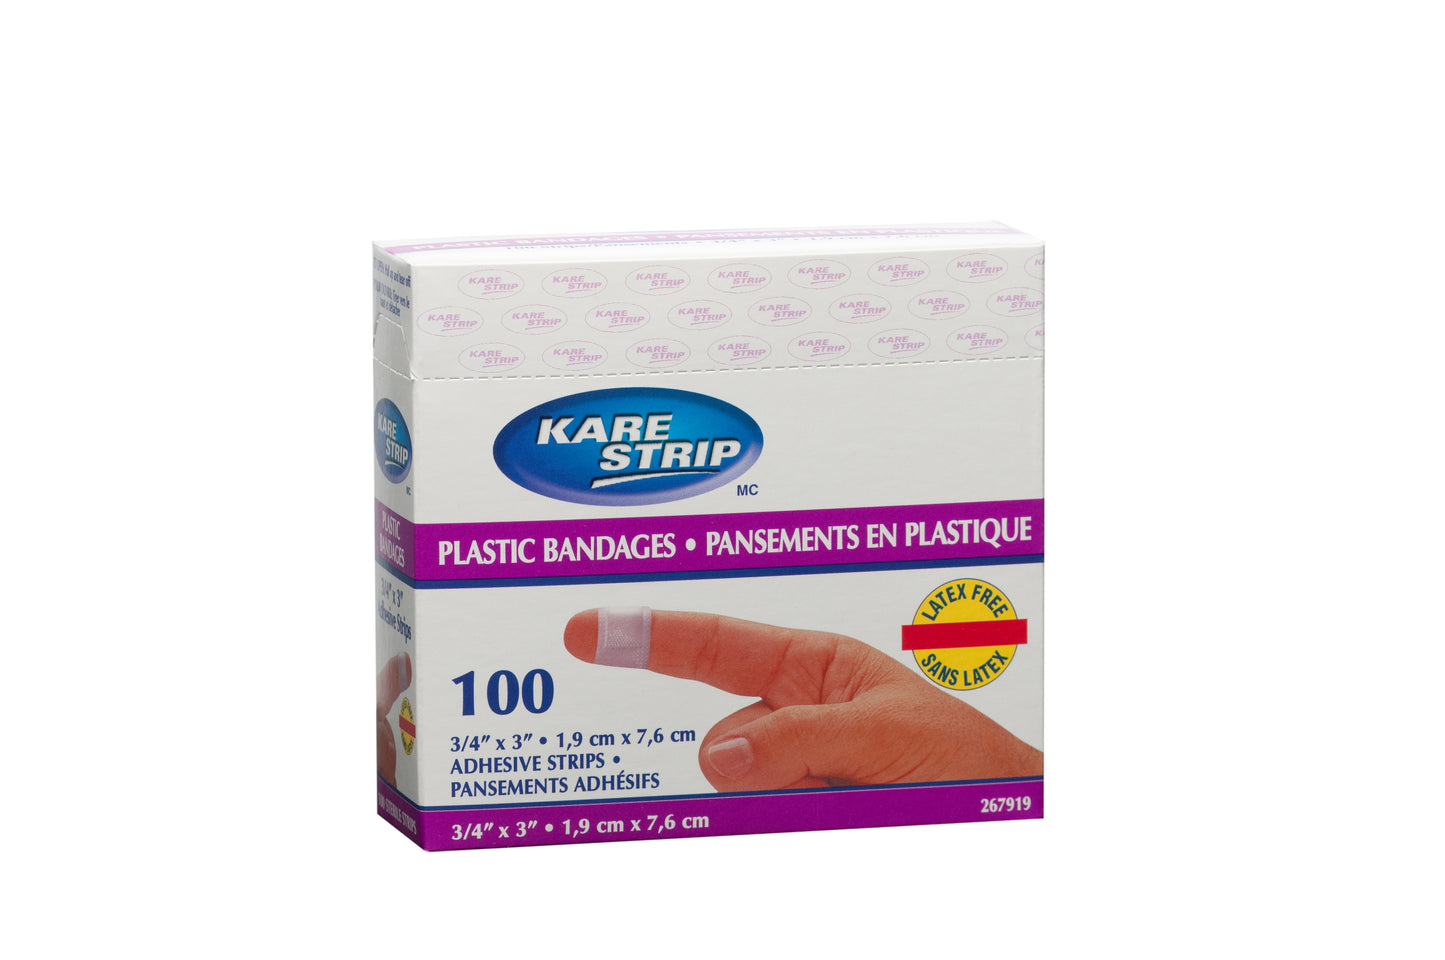 Kare Strip™ - Bandages sans latex durables et flexibles pour des soins optimaux - 100% sans latex